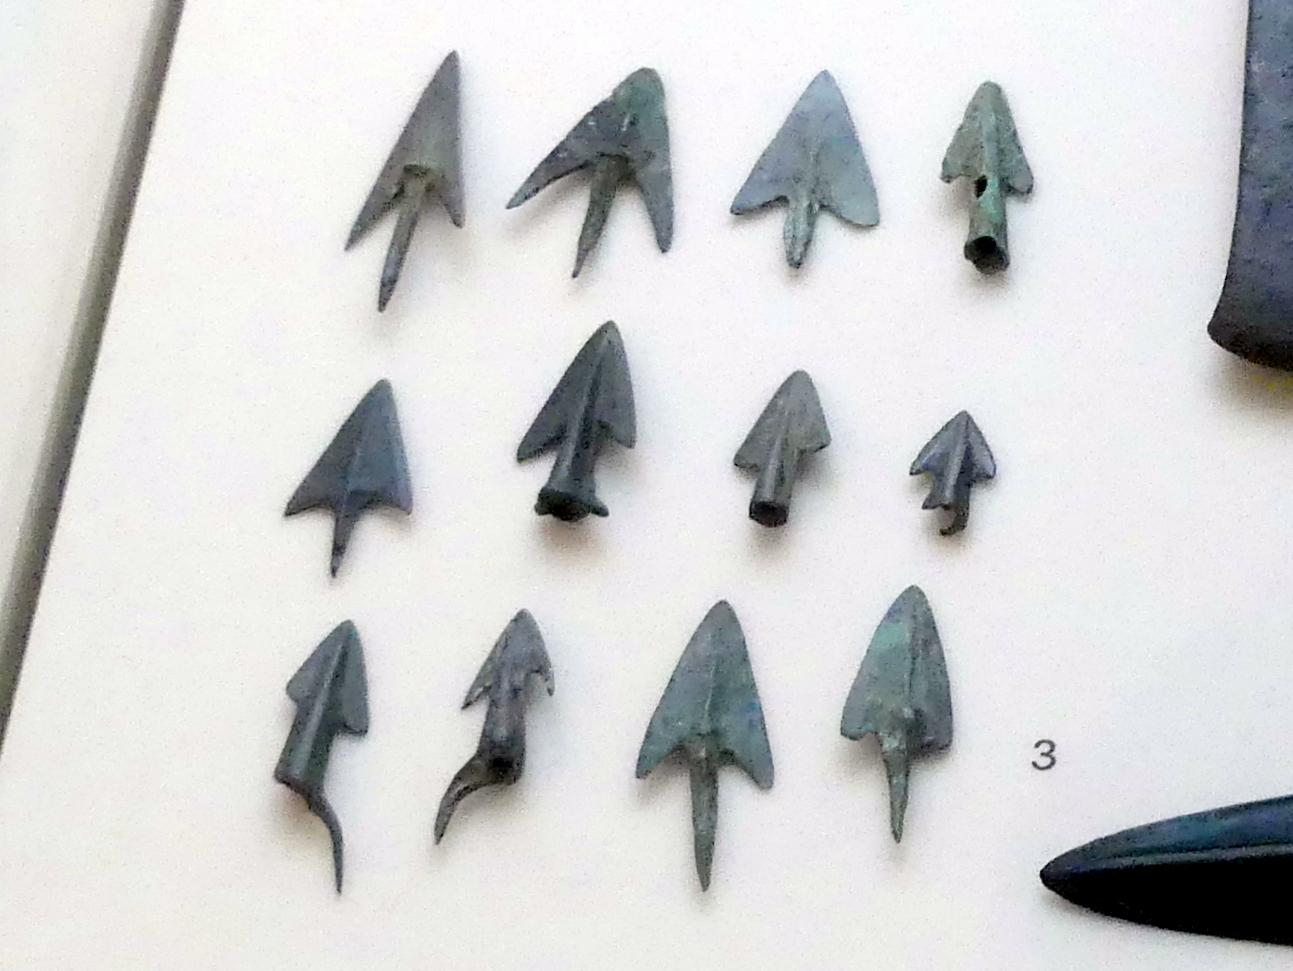 Pfeilspitzen, Urnenfelderzeit, 1400 - 700 v. Chr., 1300 - 1200 v. Chr., Bild 1/2